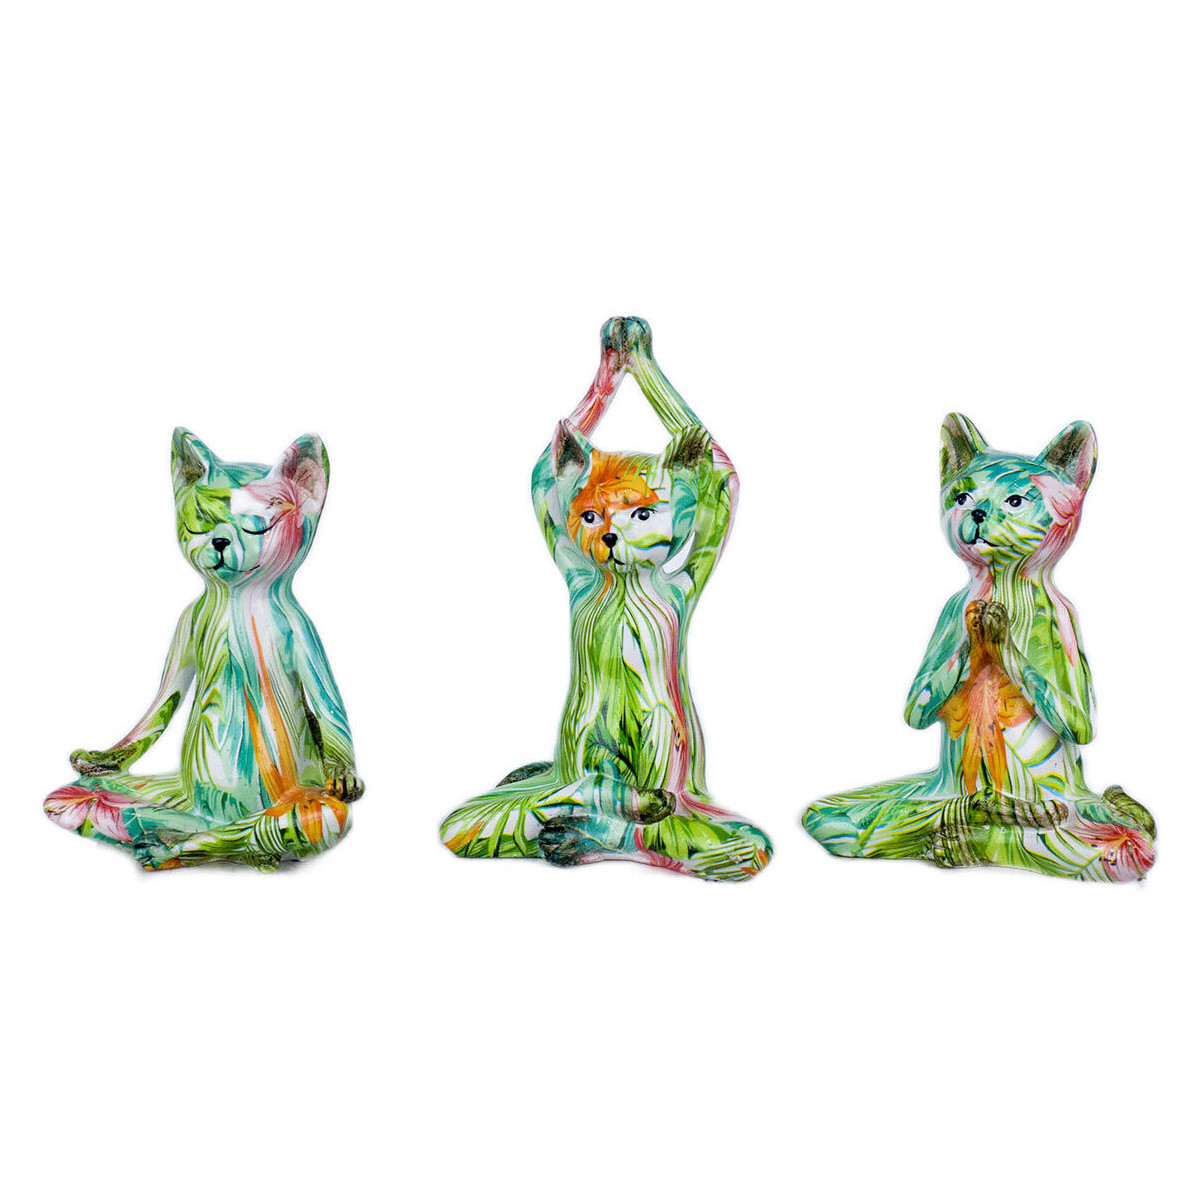 Σπίτι Αγαλματίδια και  Signes Grimalt Σχήμα Cat 3 Undiades Green